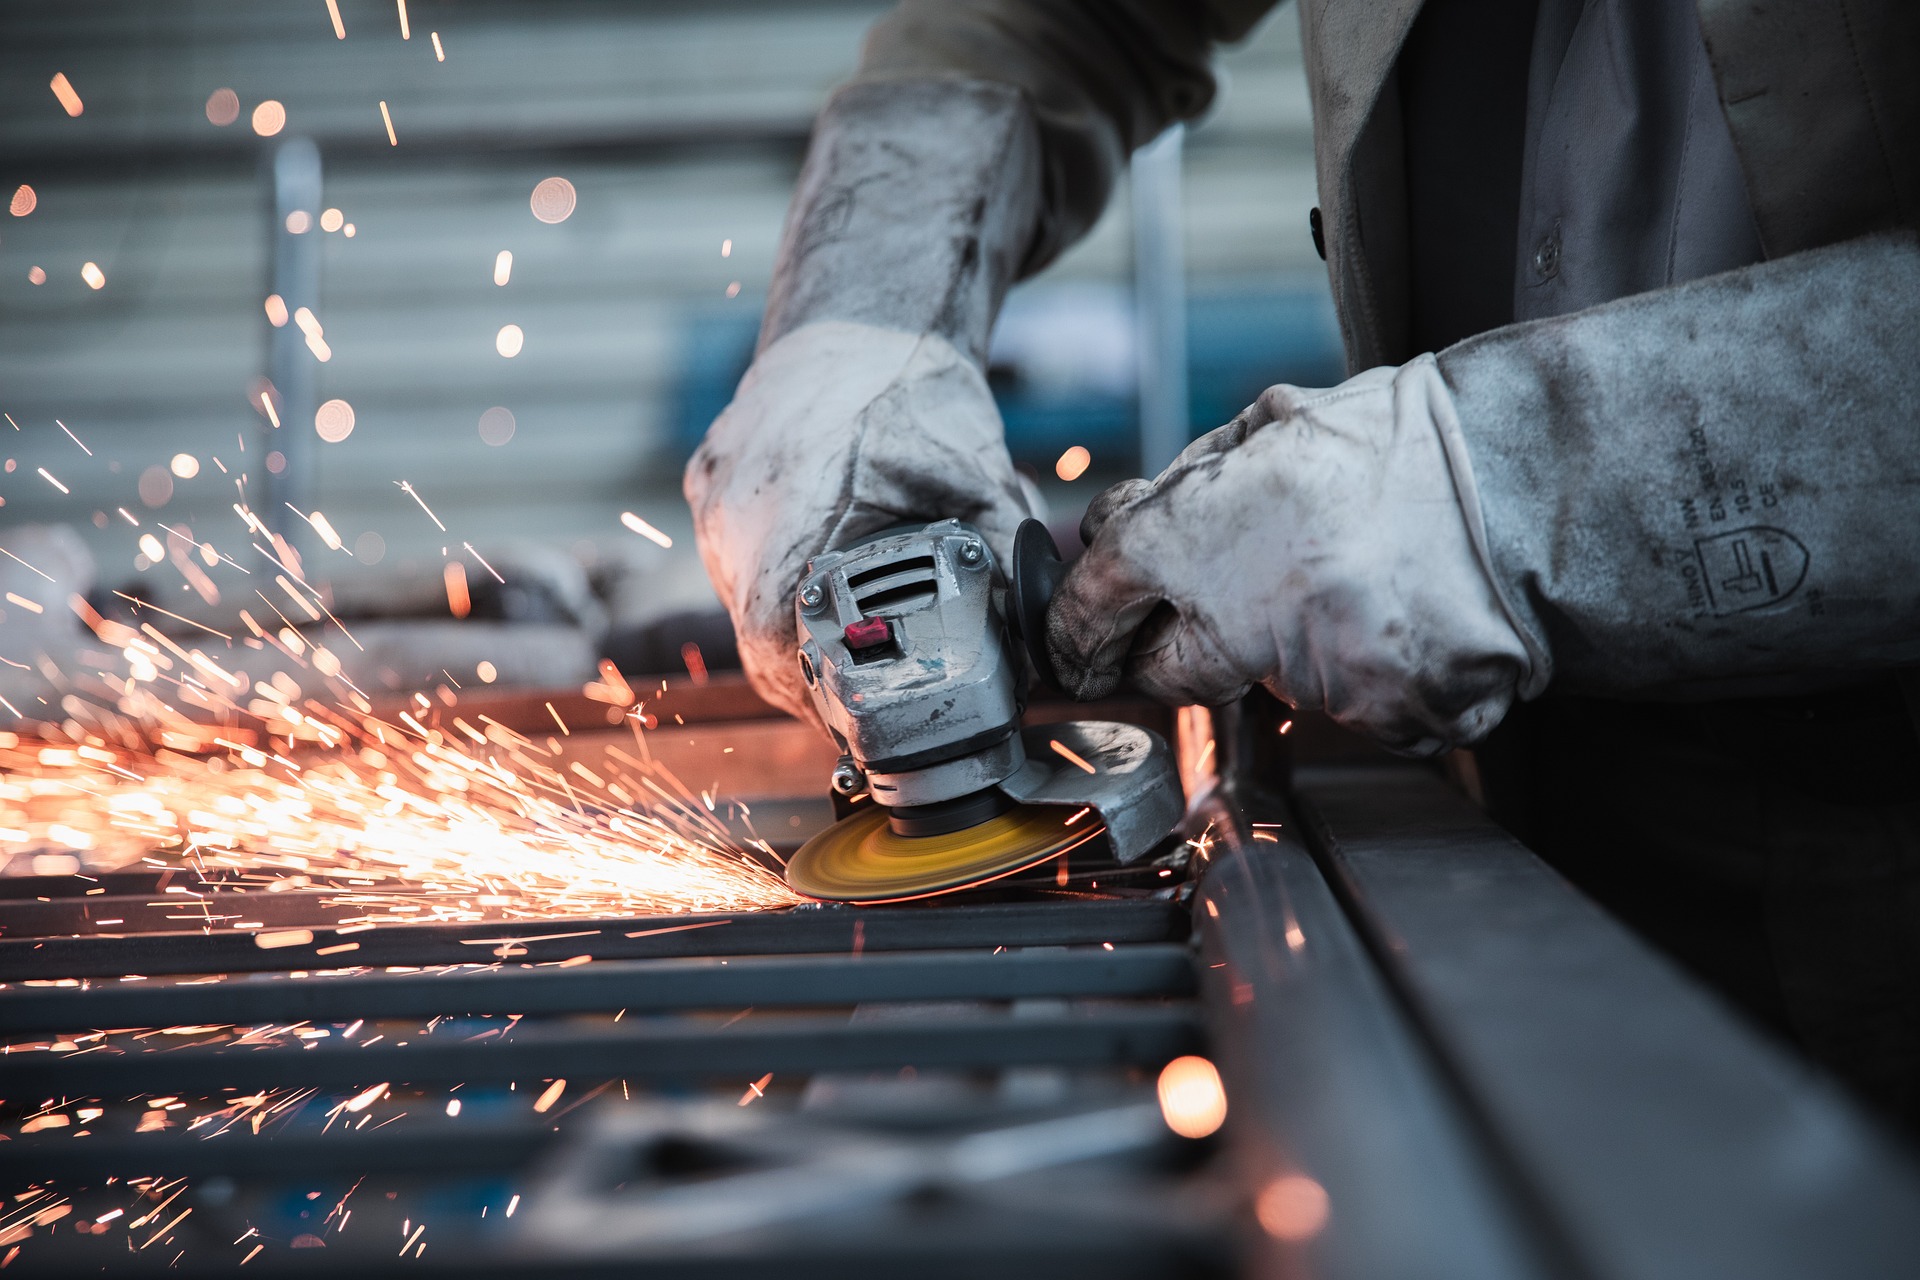 Trabalhador, com equipamentos de proteção individual, esmerilha barras de metal que soltam faíscas incandescentes (Foto: Janno Nivergall/Pixabay)